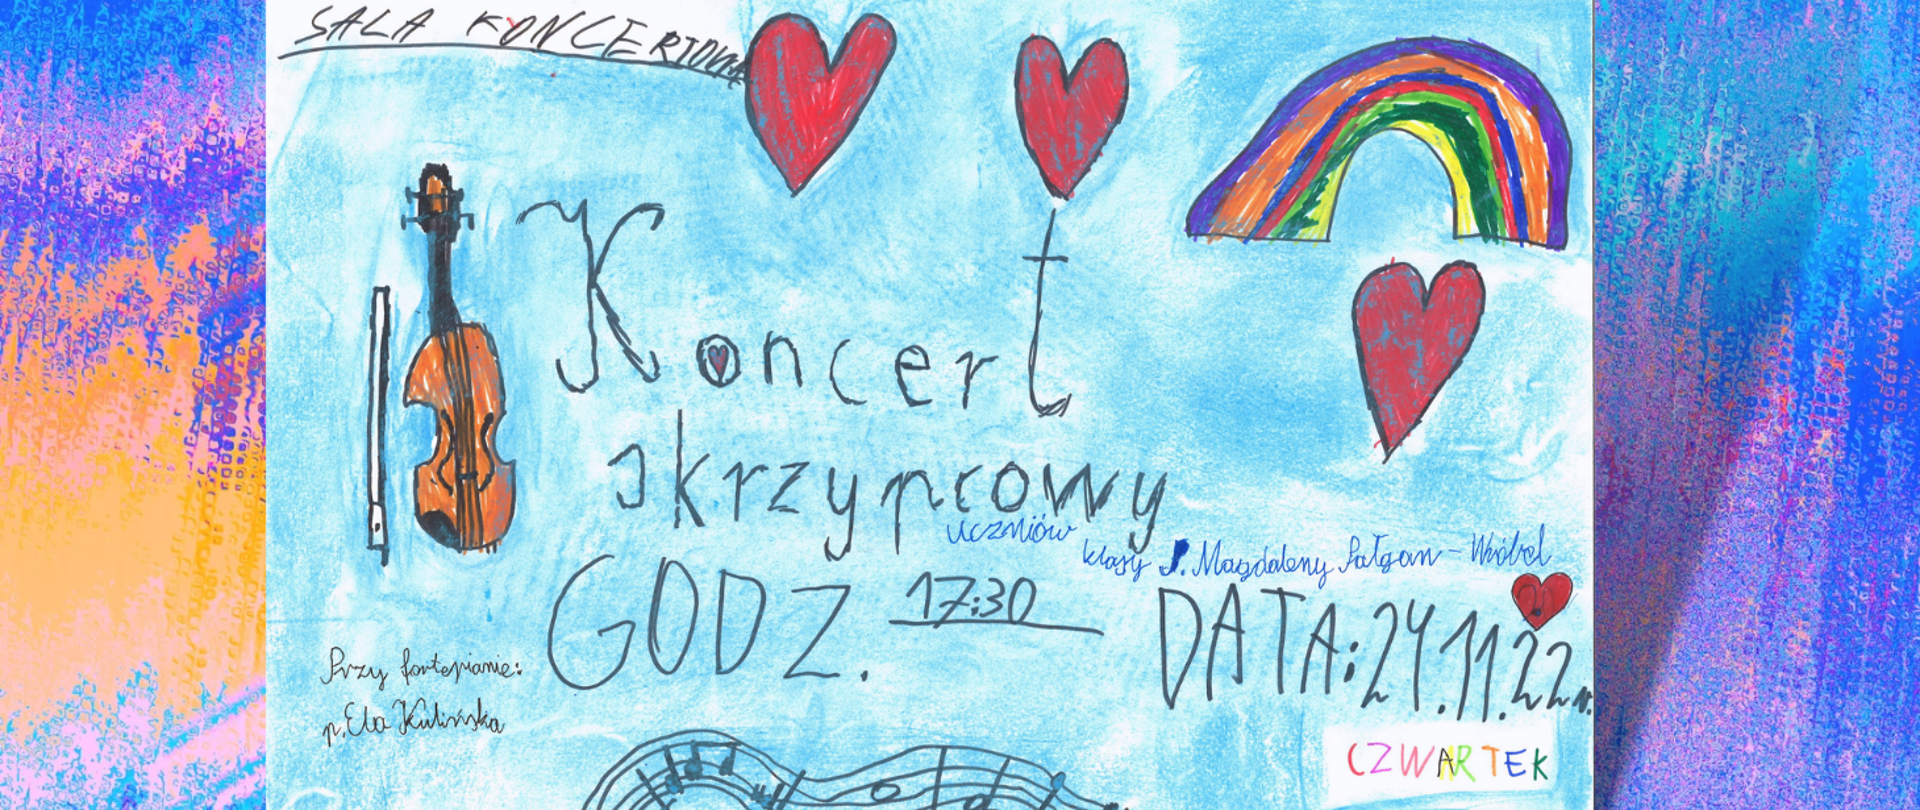 plakat- z lewej rysunek skrzypiec , napis Koncert skrzypcowy uczniów, nad napisem w prawej części plakatu narysowane trzy czerwone serca z rysunkiem kolorowej tęczy